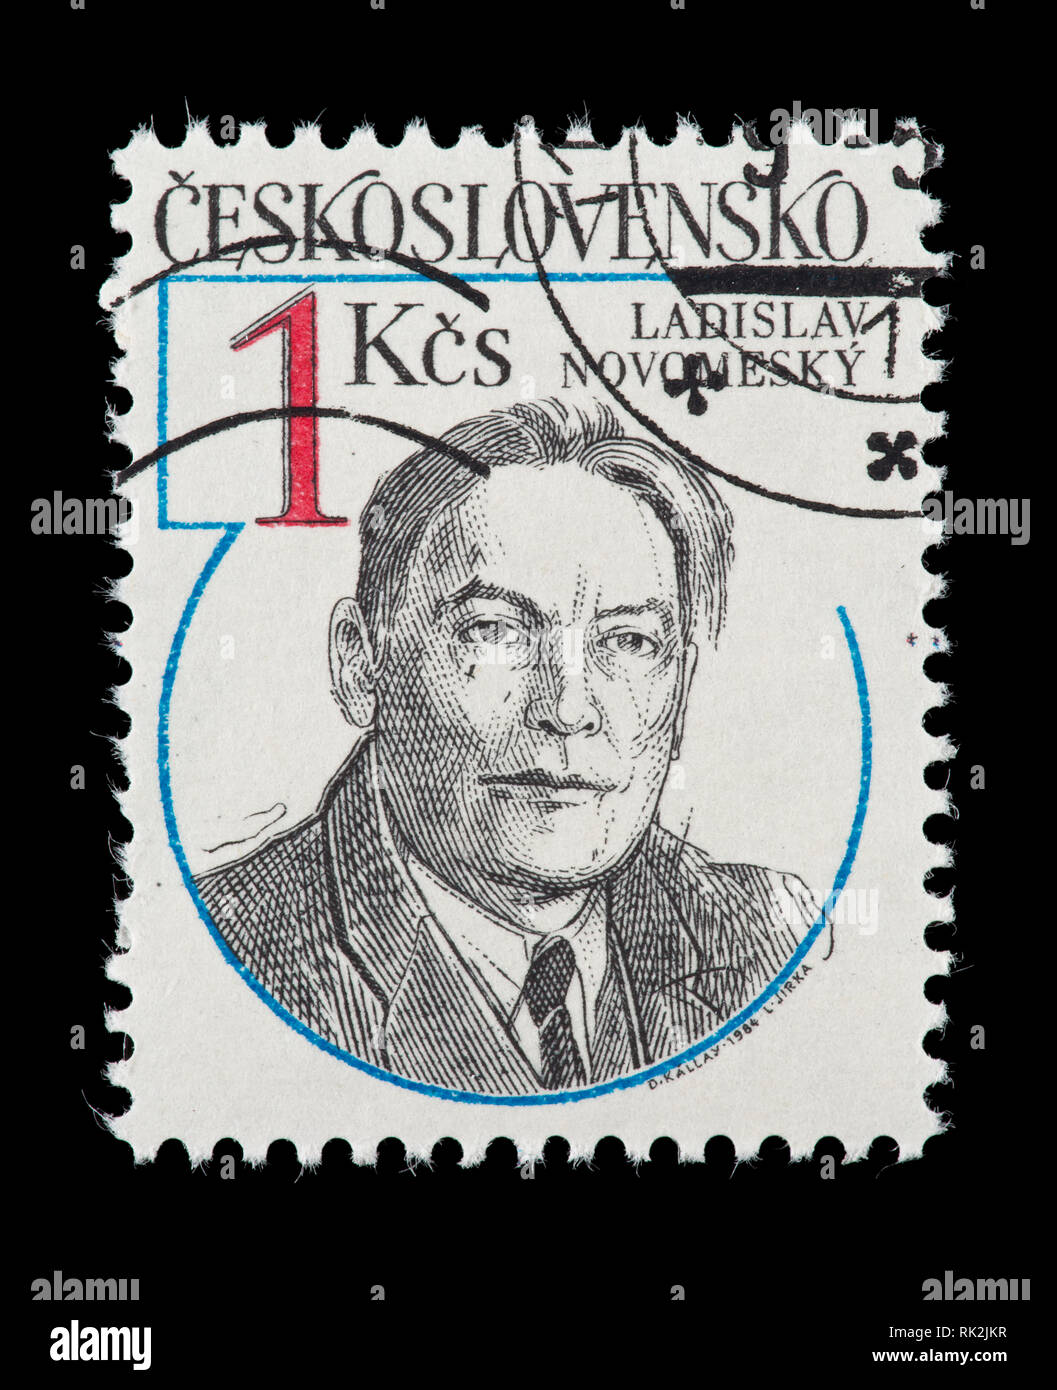 Briefmarke aus der Tschechoslowakei, Ladislav Novomesky, 2. Weltkrieg Widerstandskämpfer. Stockfoto